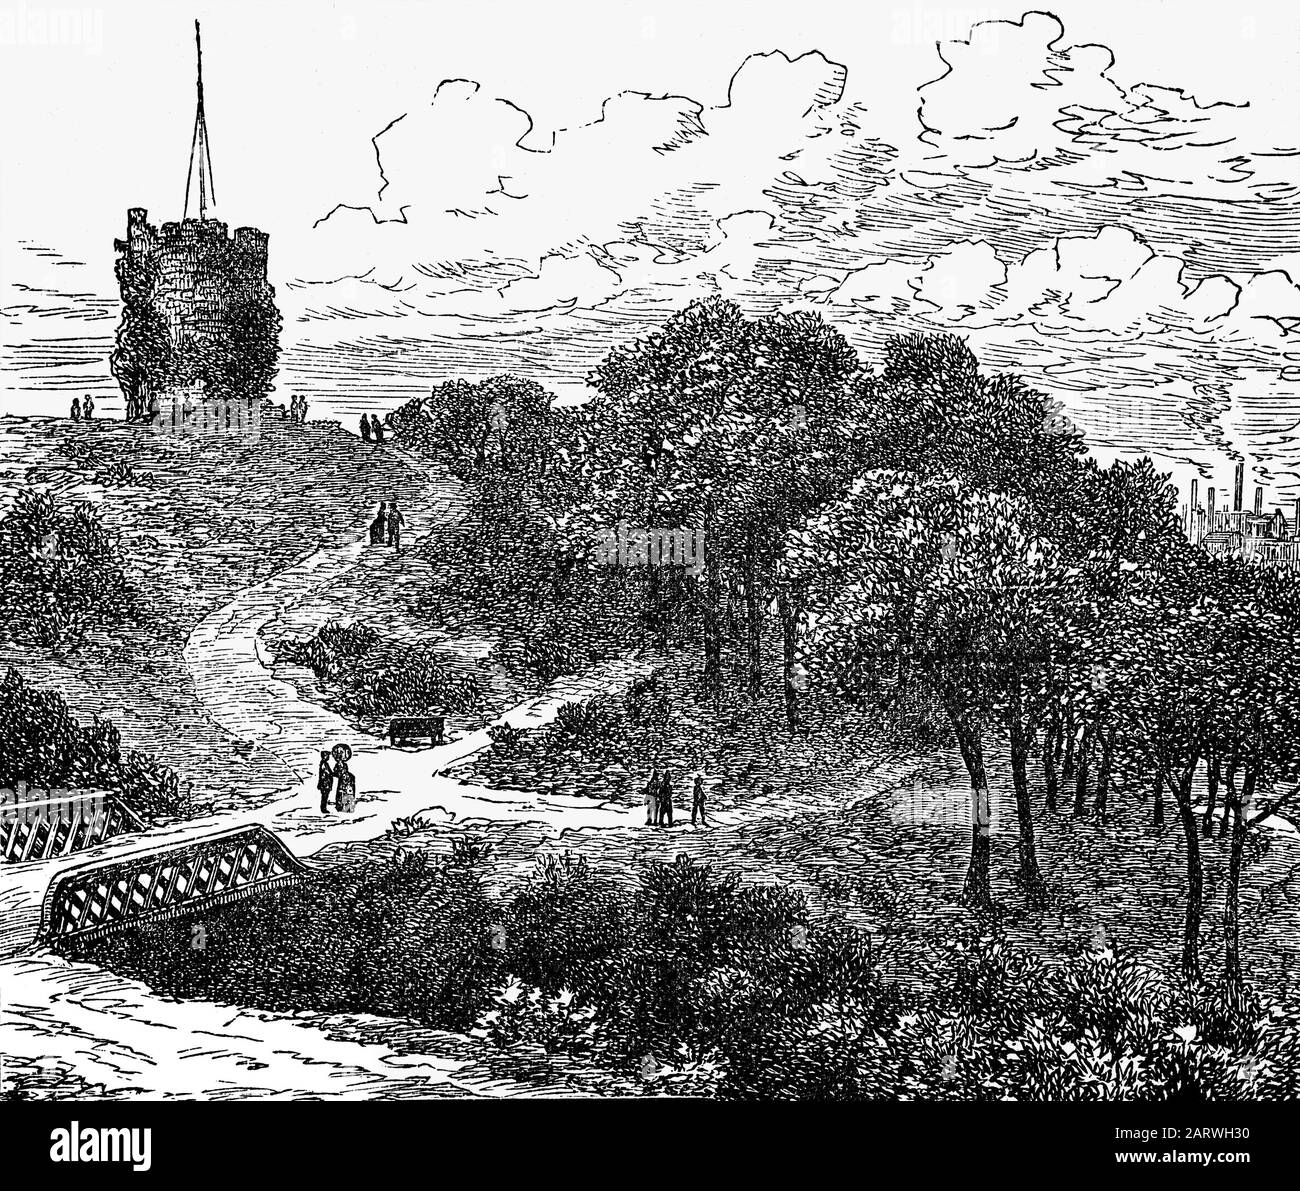 La tour de l'horloge et le pont Rustique à Cragside, près de Rothbury, dans le Northumberland, en Angleterre. La propriété de 1 729 acres avait cinq lacs artificiels utilisés pour produire de l'hydroélectricité, et la maison était la première au monde à être éclairée par l'hydroélectricité, à l'aide de lampes à incandescence fournies par l'inventeur Joseph Swan. Il a été créé par William George Armstrong (1810-1900) propriétaire de l'Armstrong Whitworth, Elswick travaille sur Tyneside. Banque D'Images